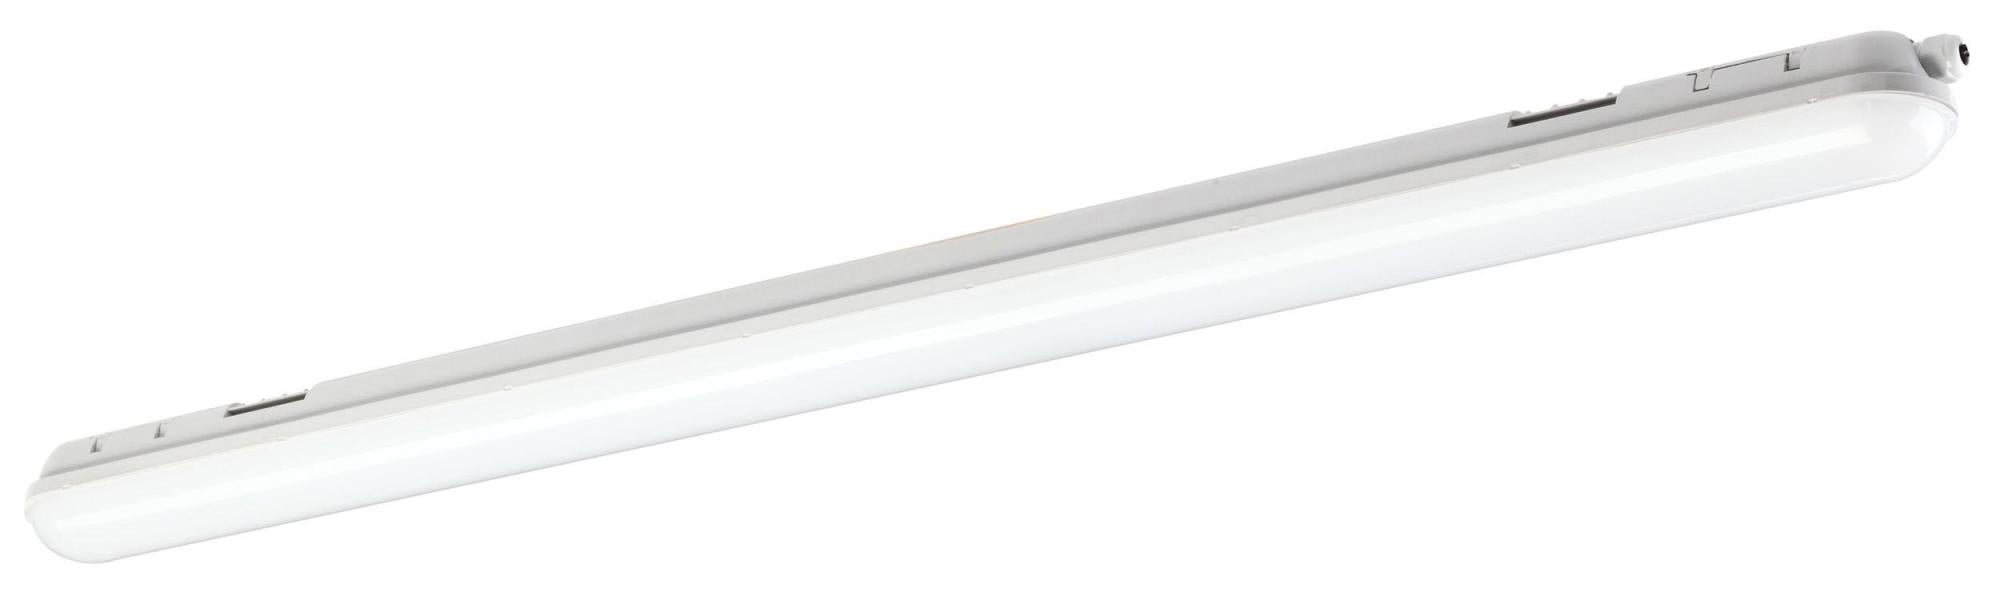 Reglette con fonte luminosa LED per soffitto Aqualux sensor, luce bianco,  150 cm, 1 x 35W 3300LM STARLICHT